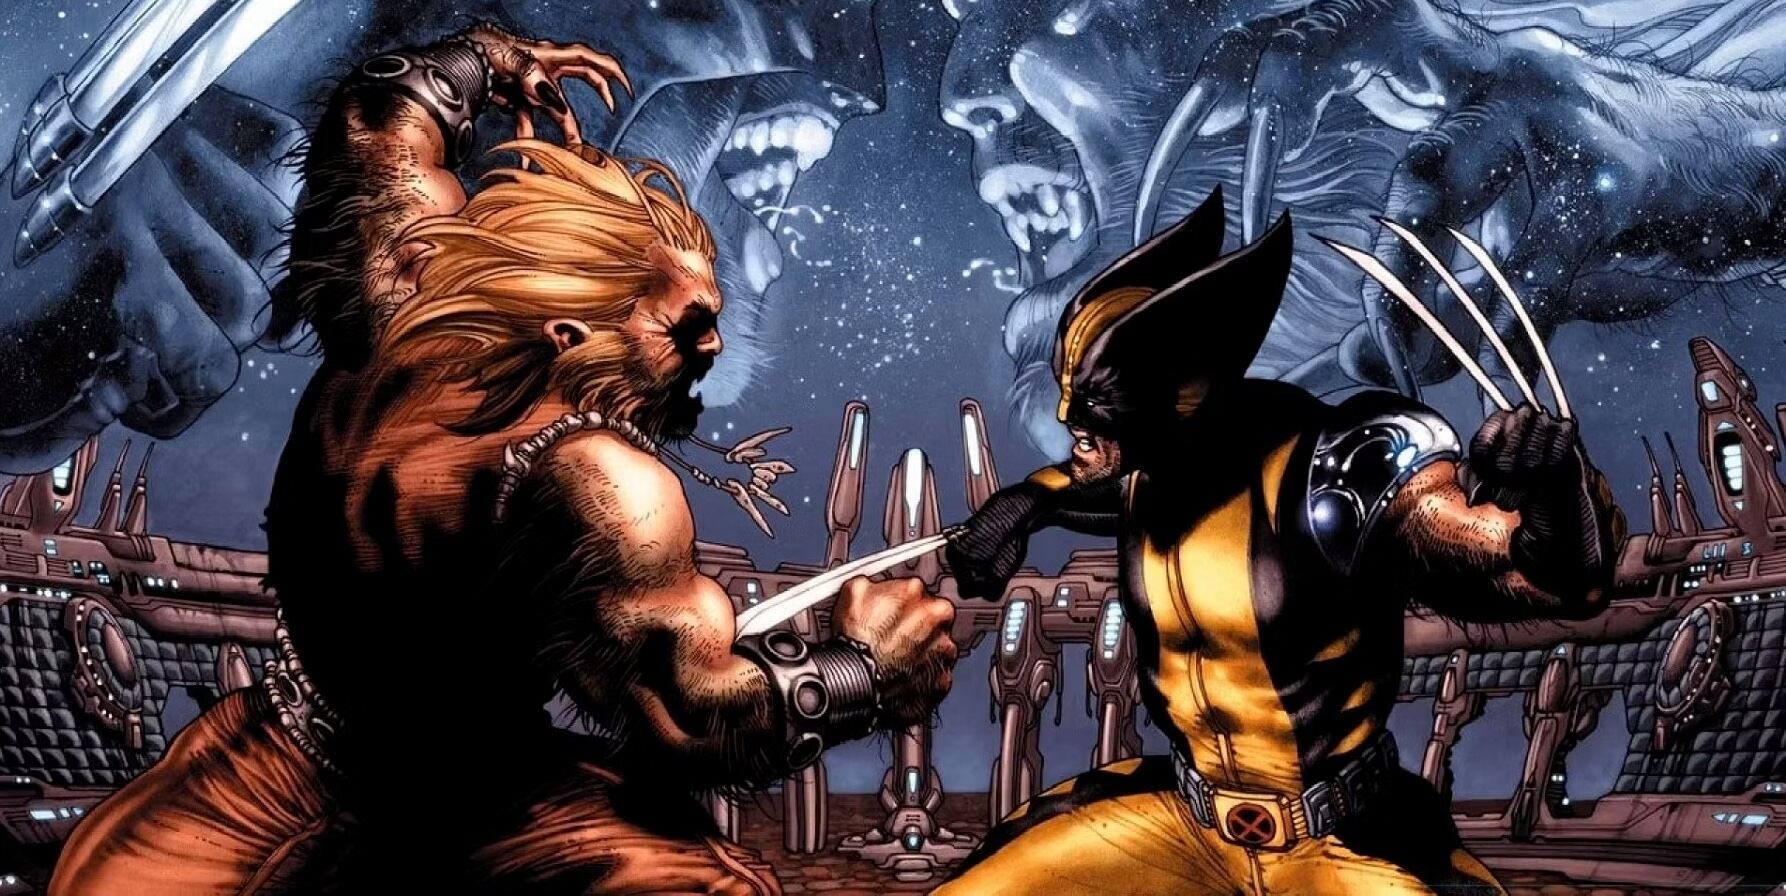 Dientes de Sable o Sabretooth, estará en Deadpool y Wolverine